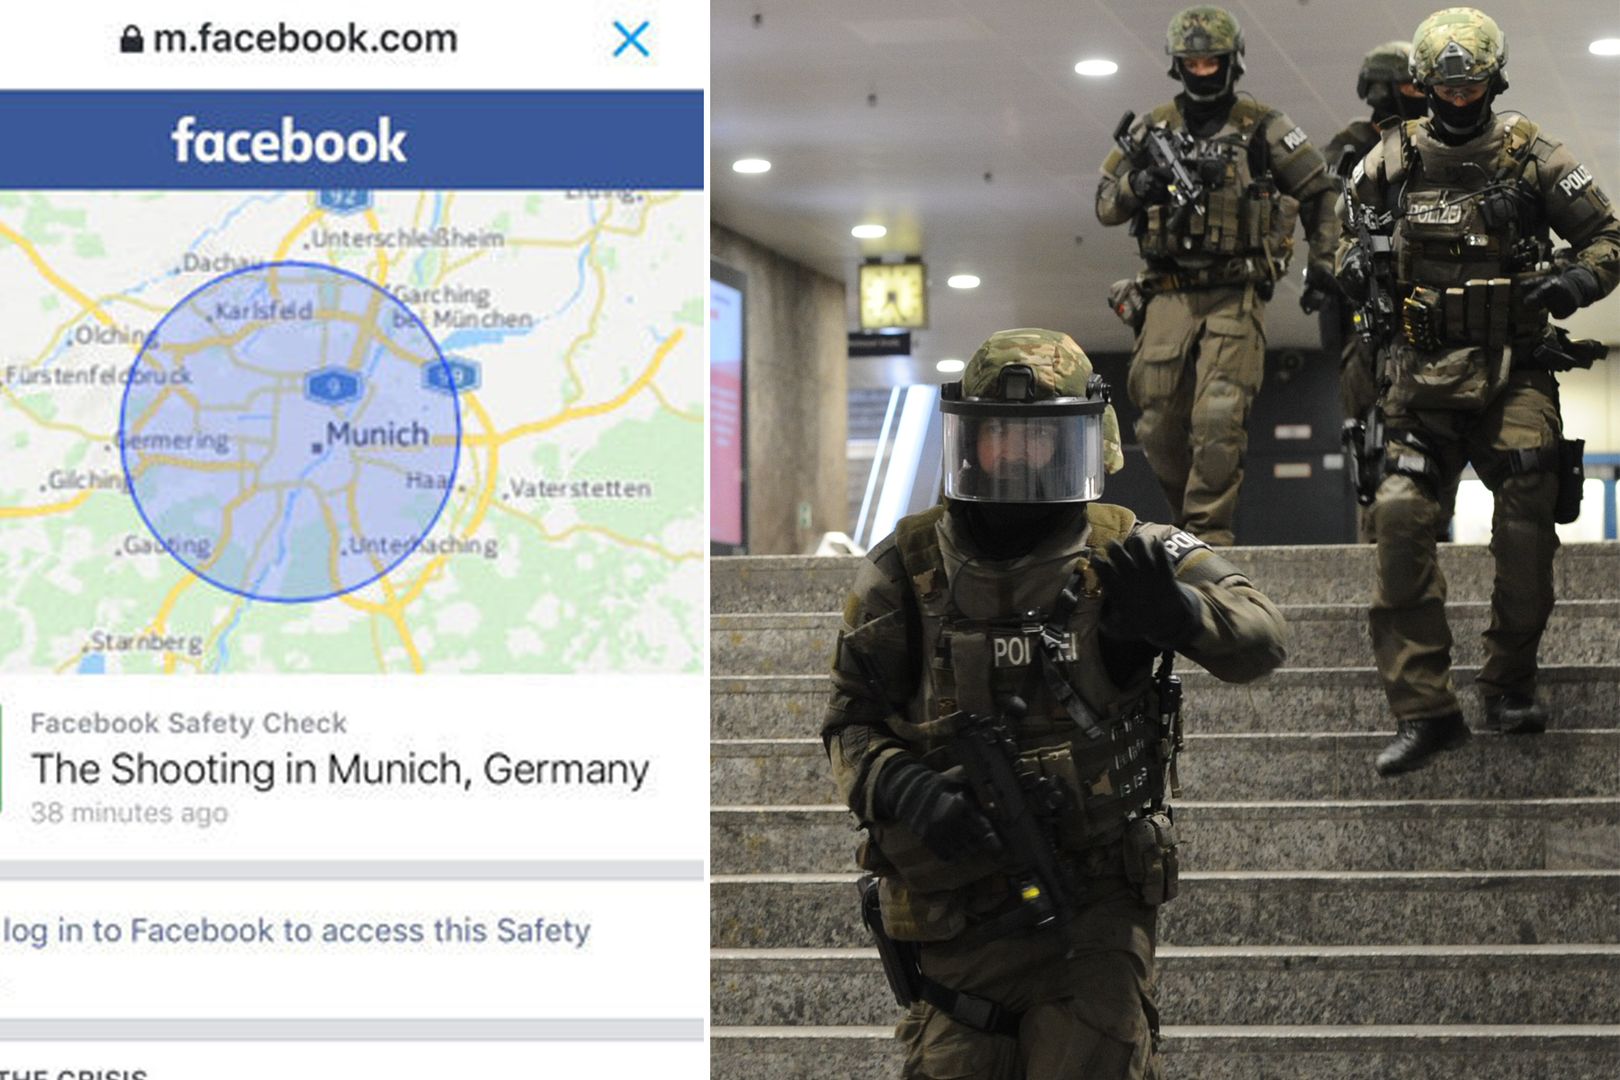 Wzajemna pomoc w internecie. To reakcja na zamach w Monachium